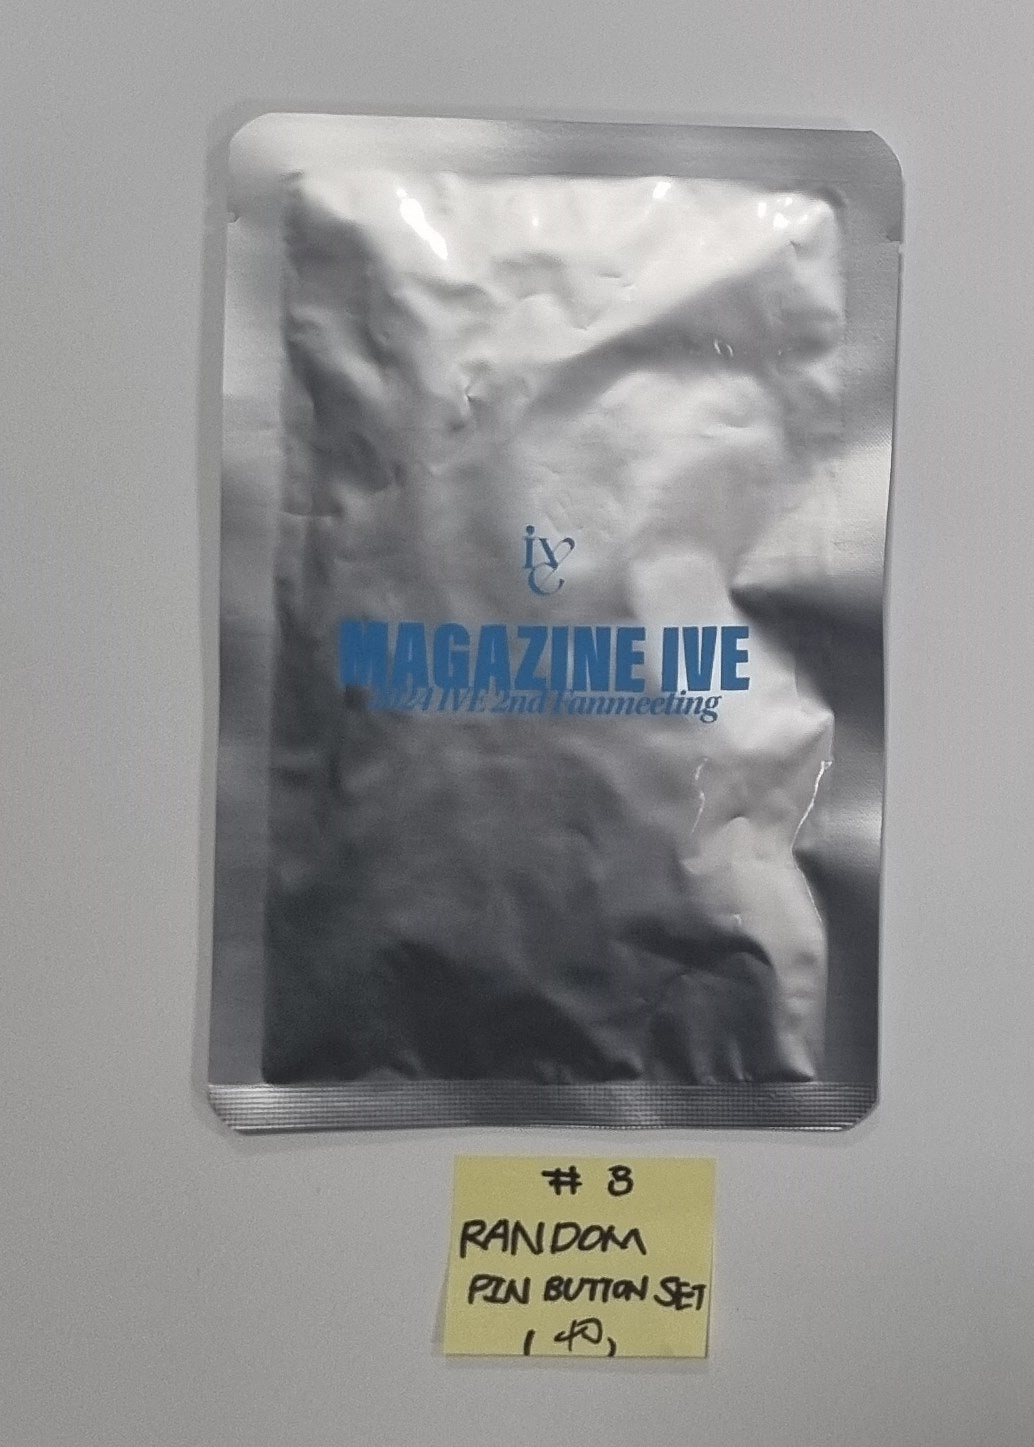 IVE "MAGAZINE IVE" 2024 IVE 2nd Fanmeeting - 公式MD [公式ライトスティック、フォトスローガン、イメージピケット、ピンボタン、スウェットシャツ] [24.3.9]